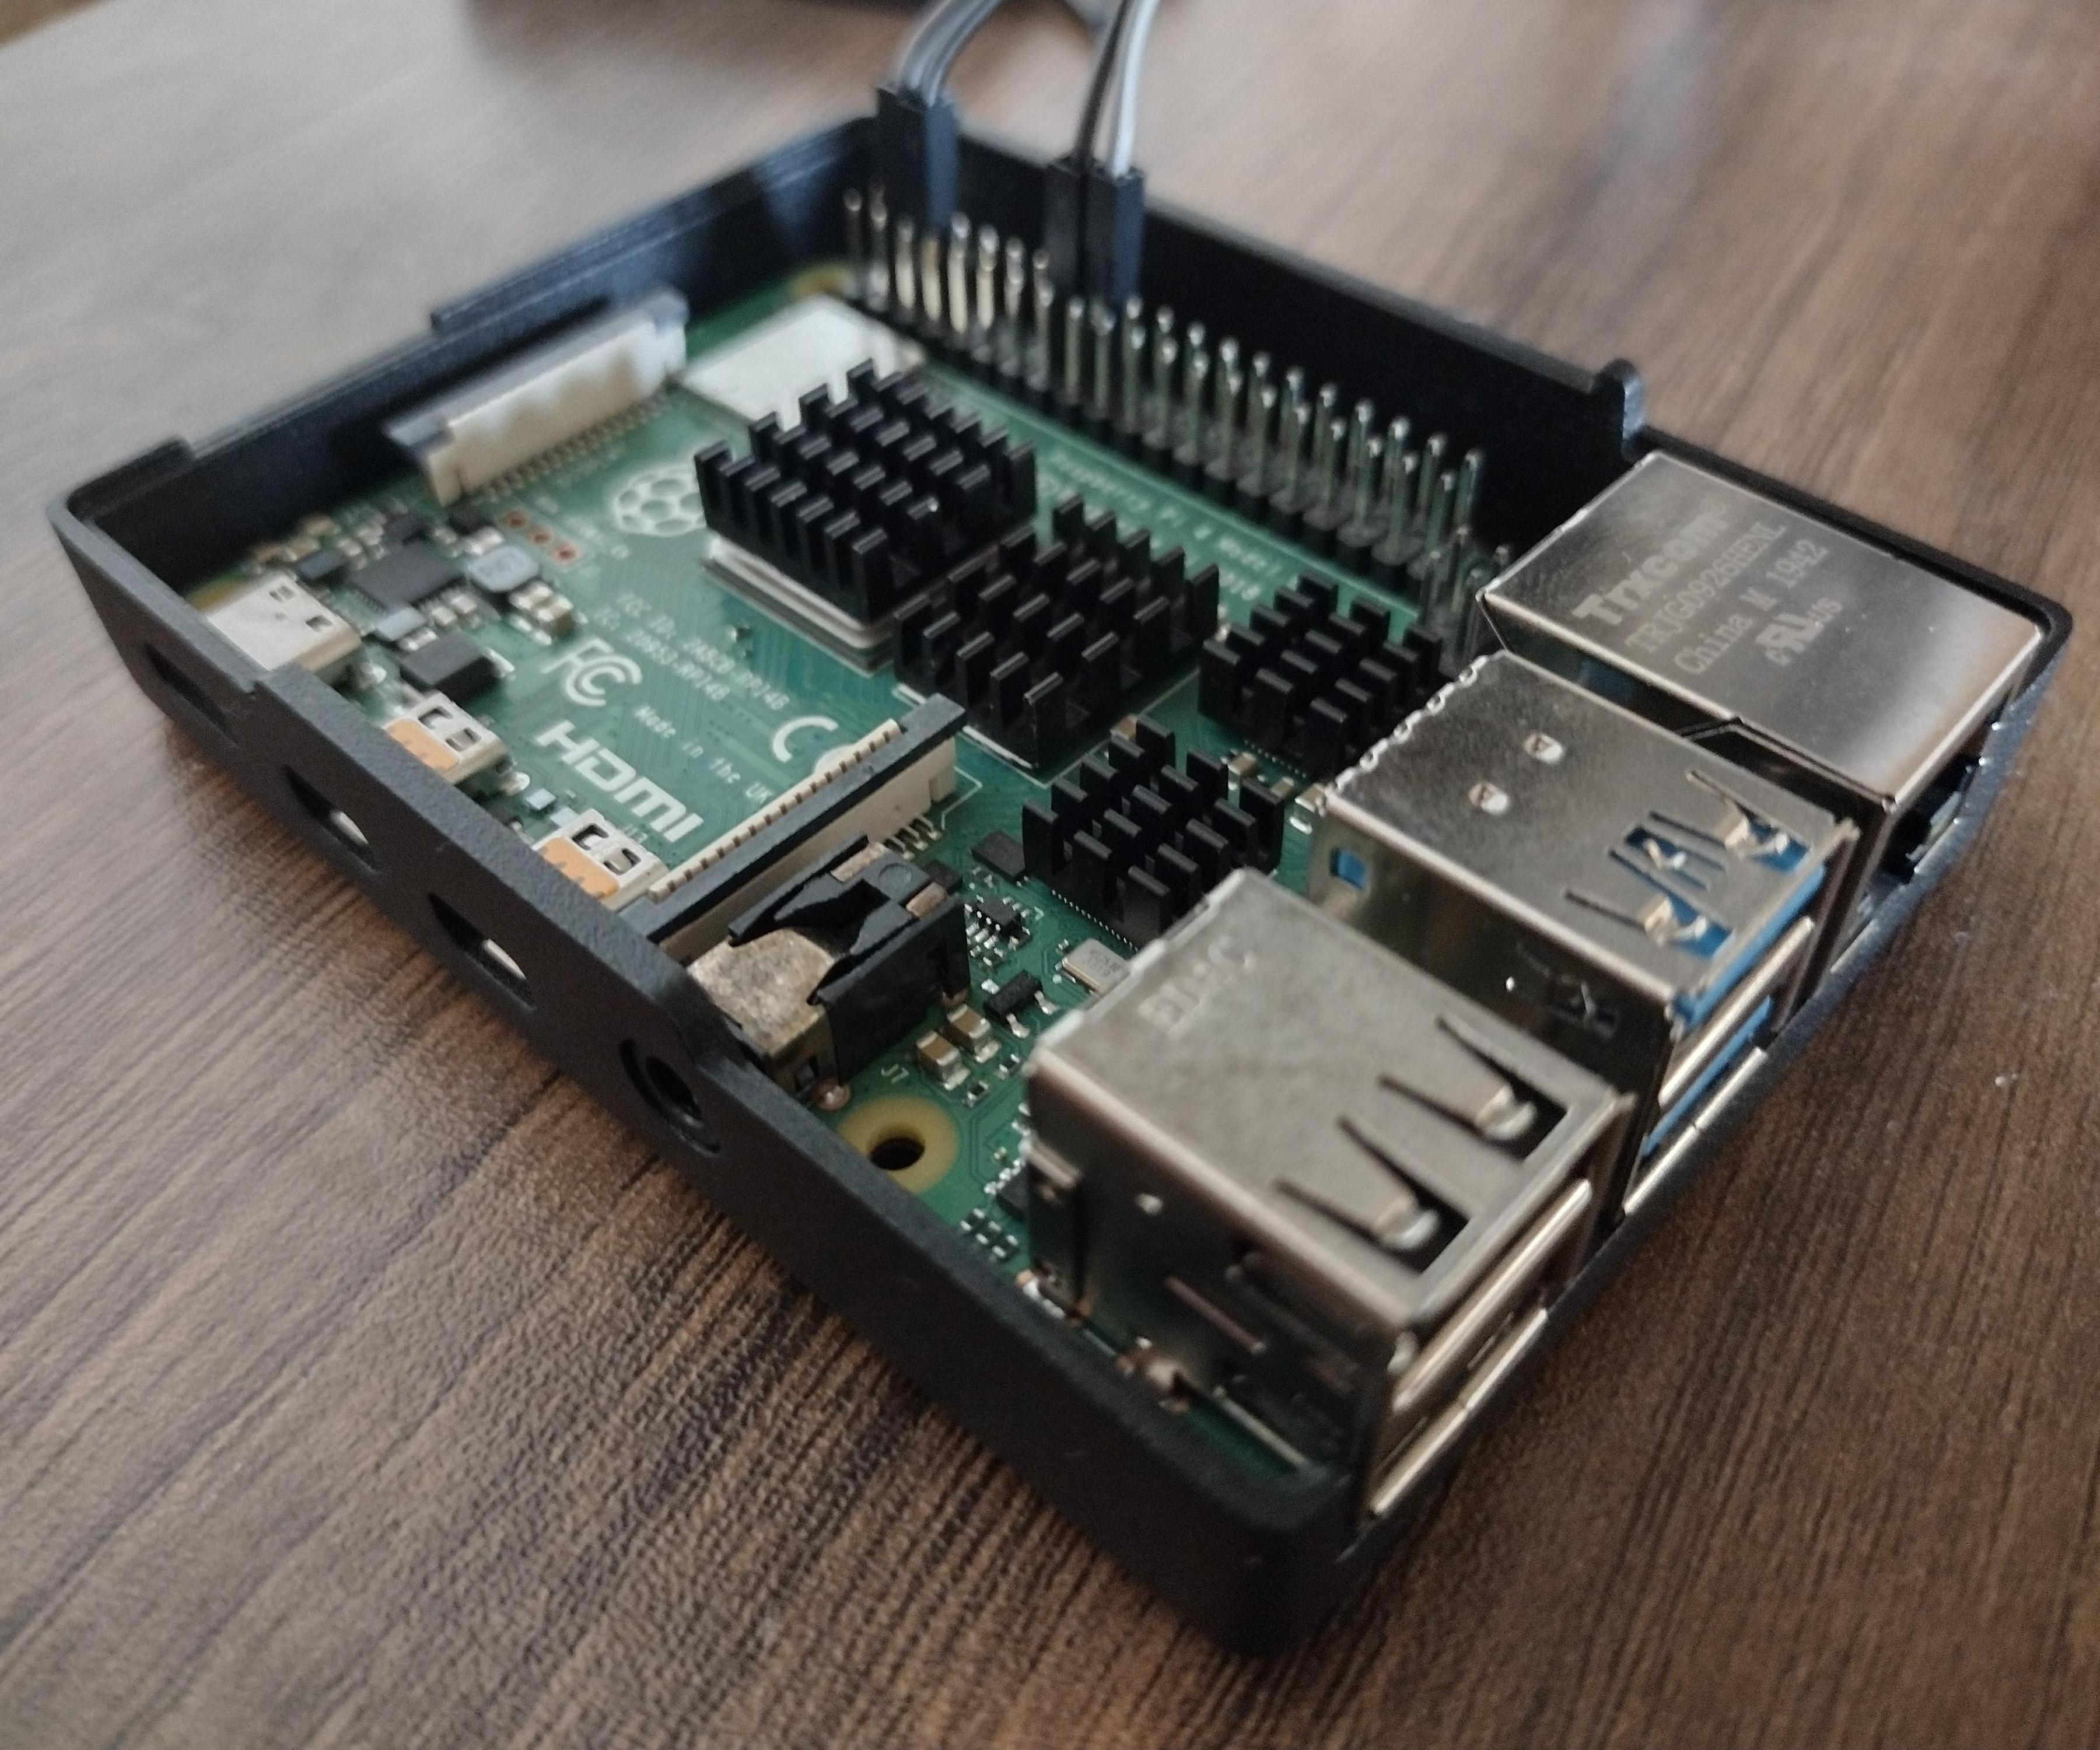 How to Make a Raspberry Pi Web Server!